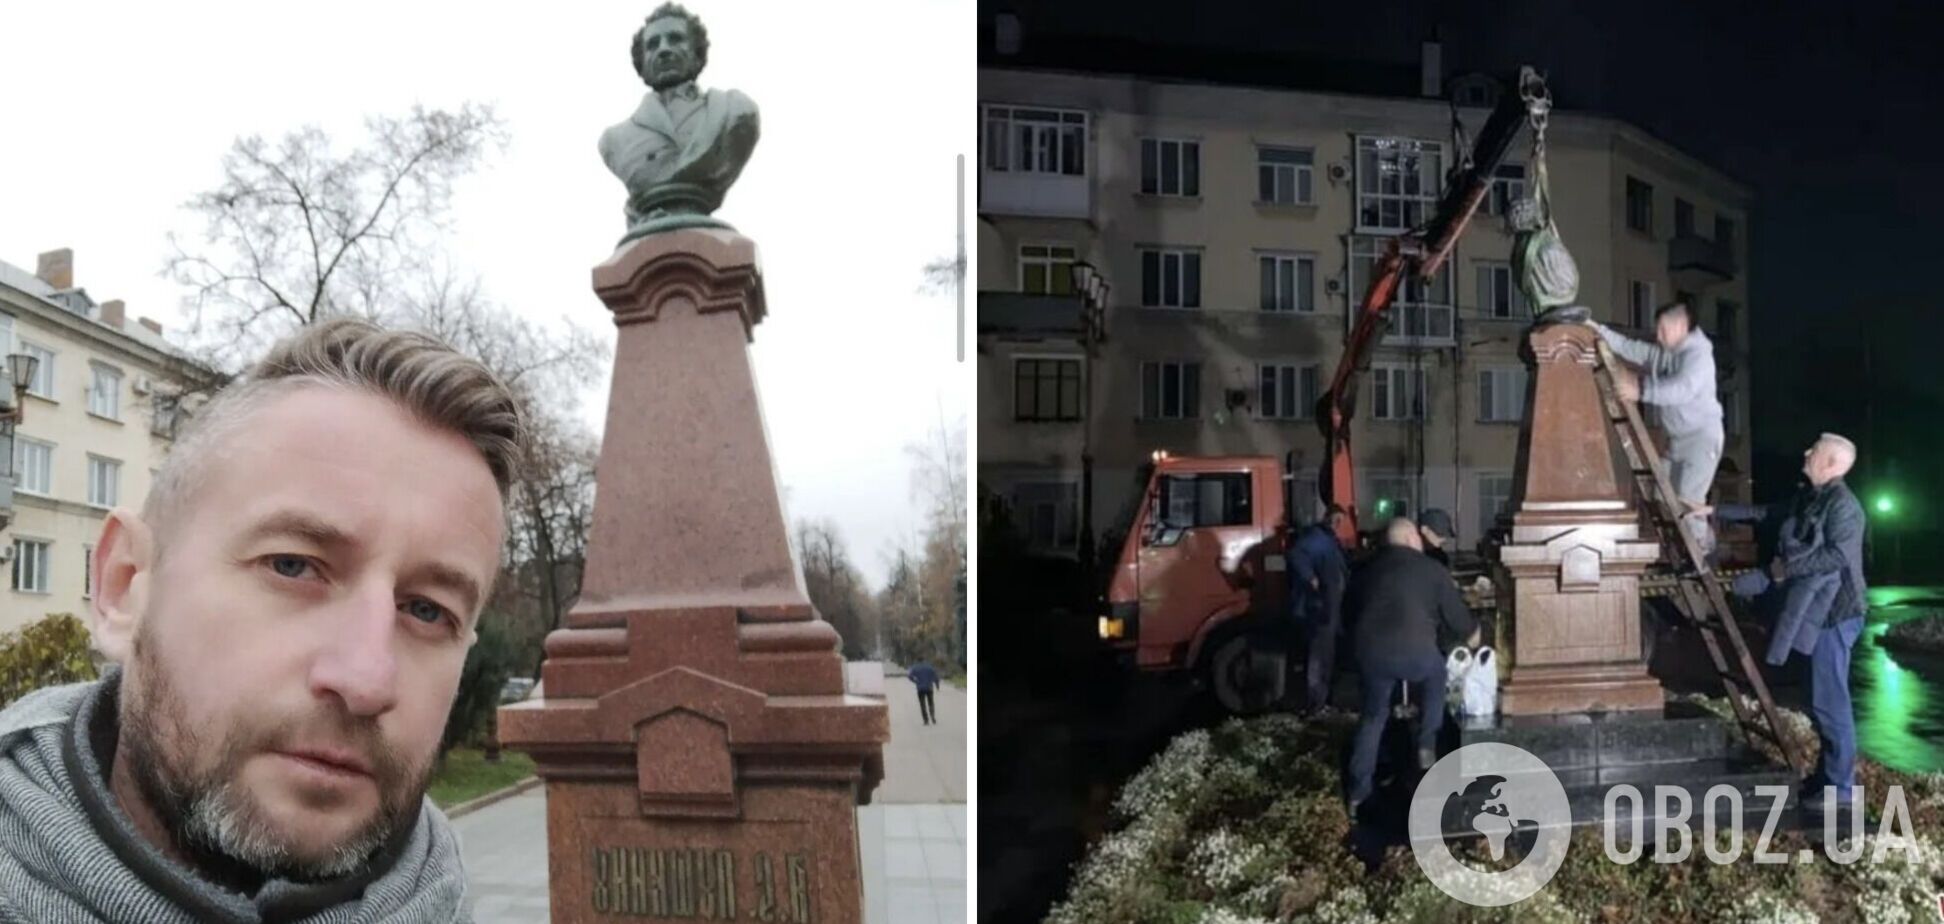 'Не маю до цього жодного стосунку': Жадан сфотографувався на фоні пам’ятника Пушкіну в Житомирі, після чого його знесли